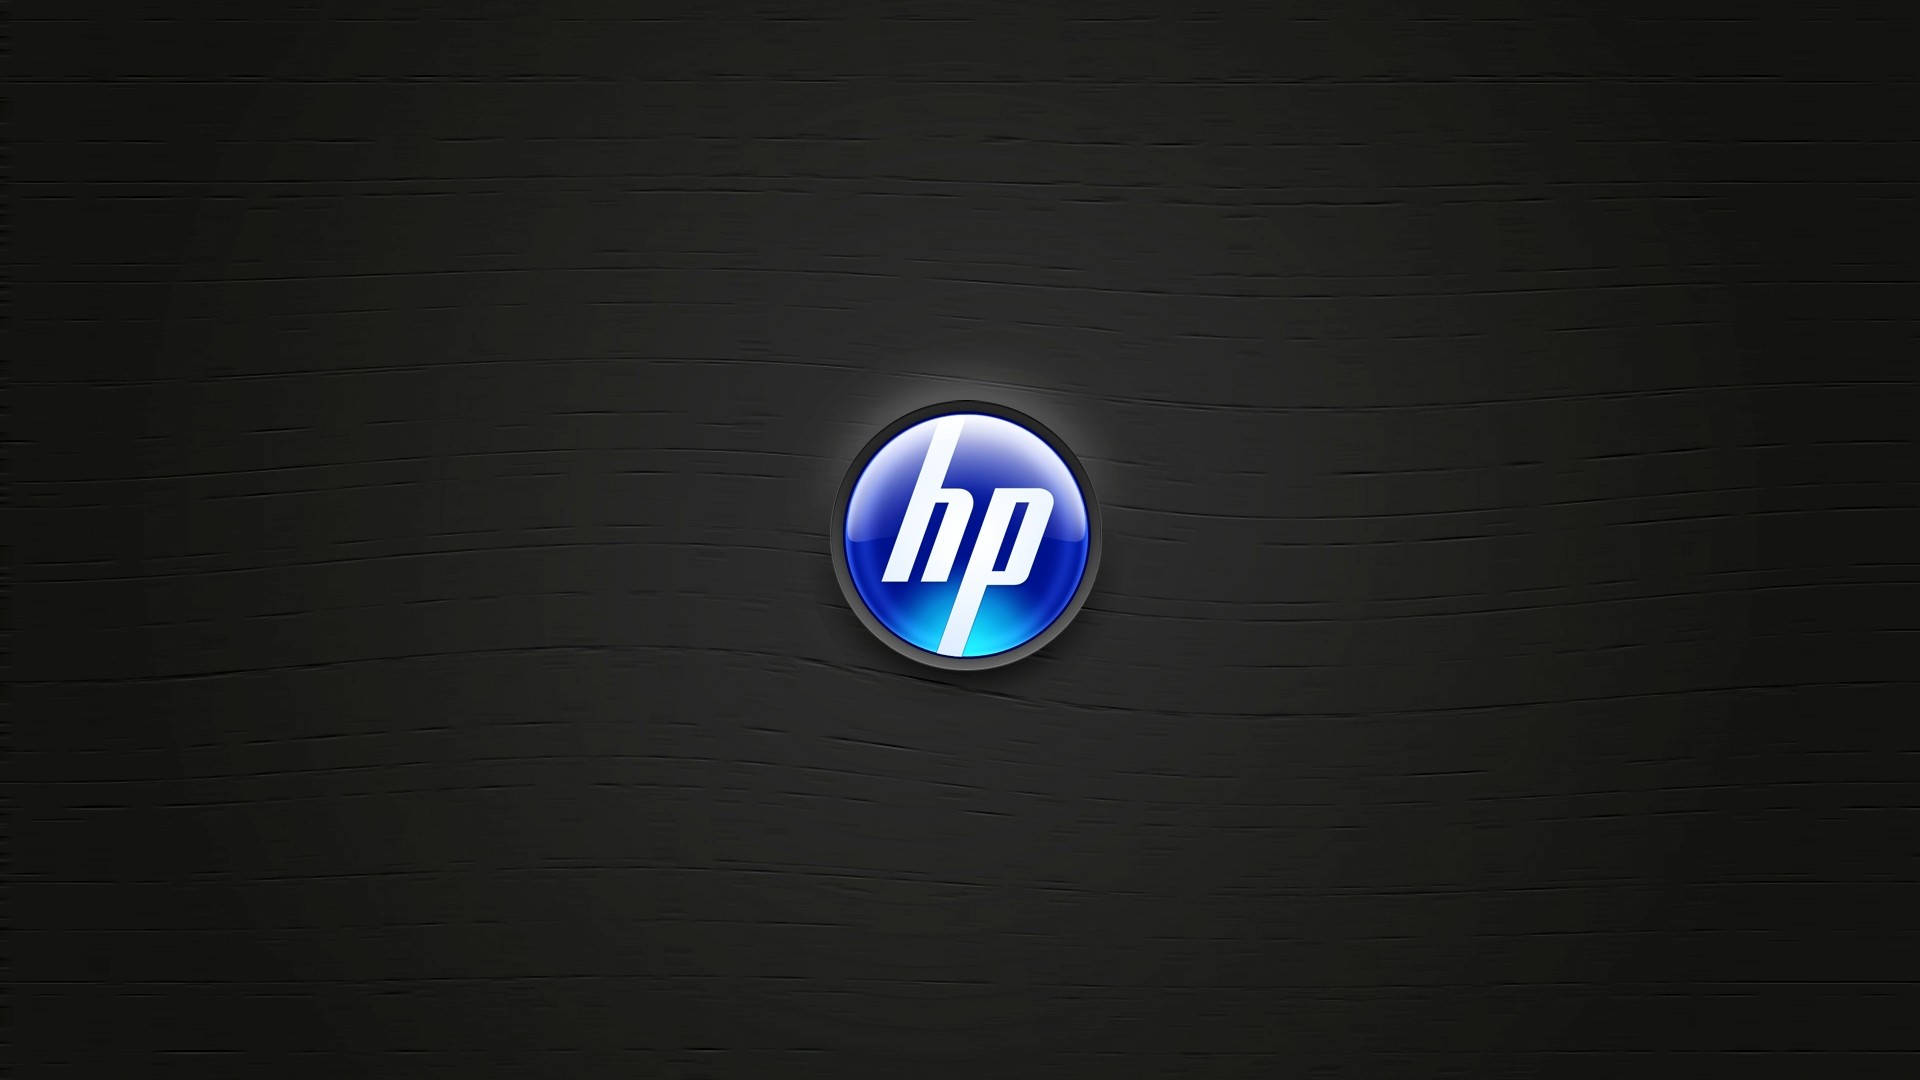 Iconic Blue Hp Laptop Logo Background